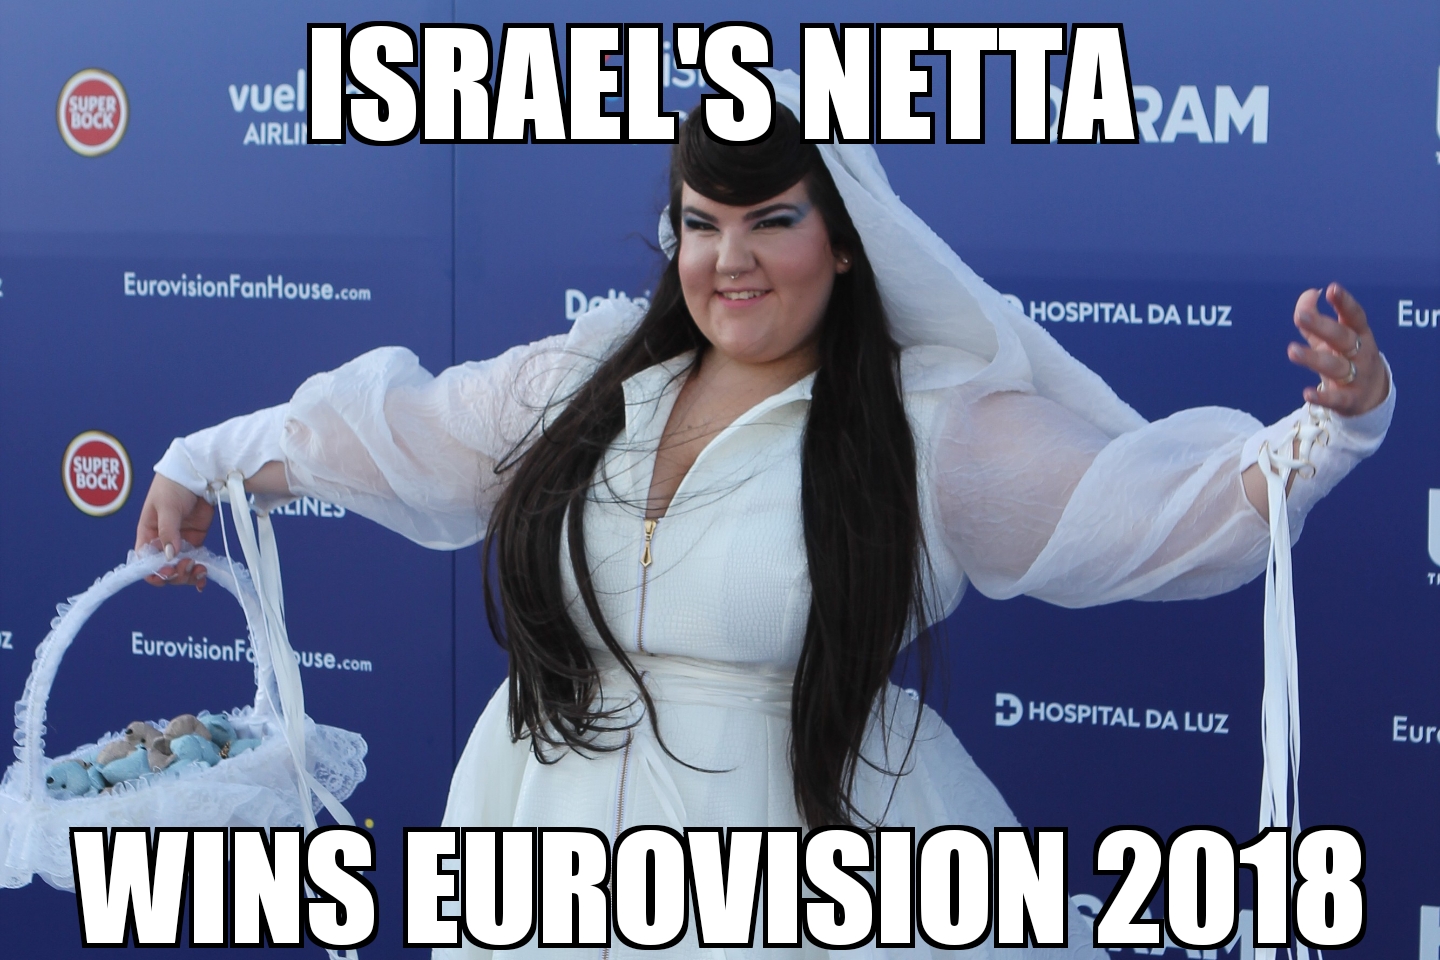 Netta wins Eurovision 2018